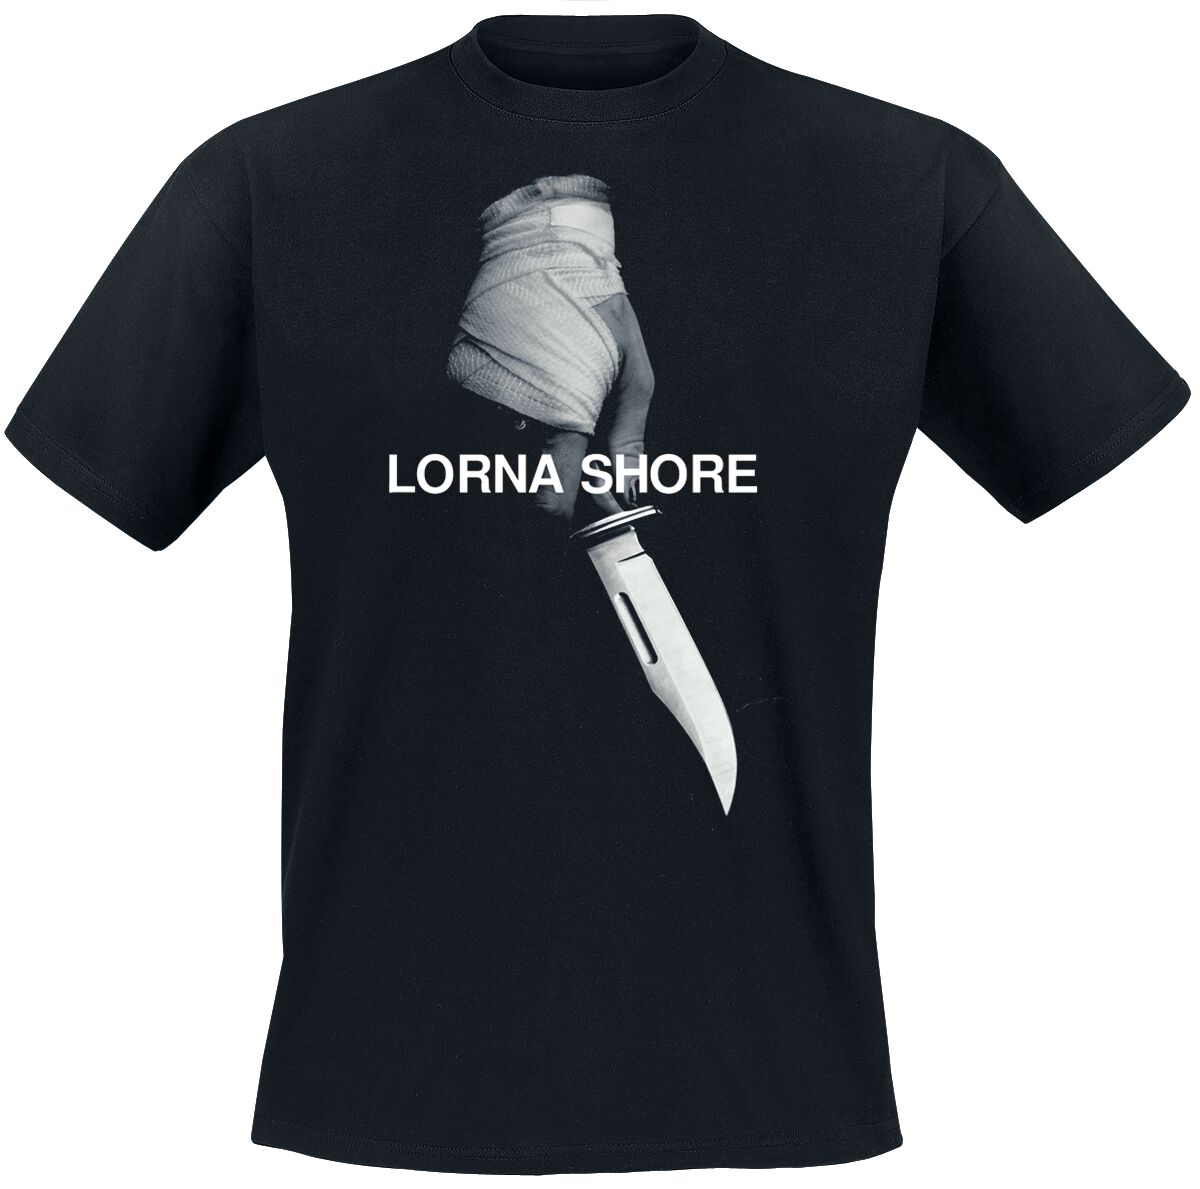 Lorna Shore T-Shirt - Pain remains - S bis XXL - für Männer - Größe L - schwarz  - Lizenziertes Merchandise!